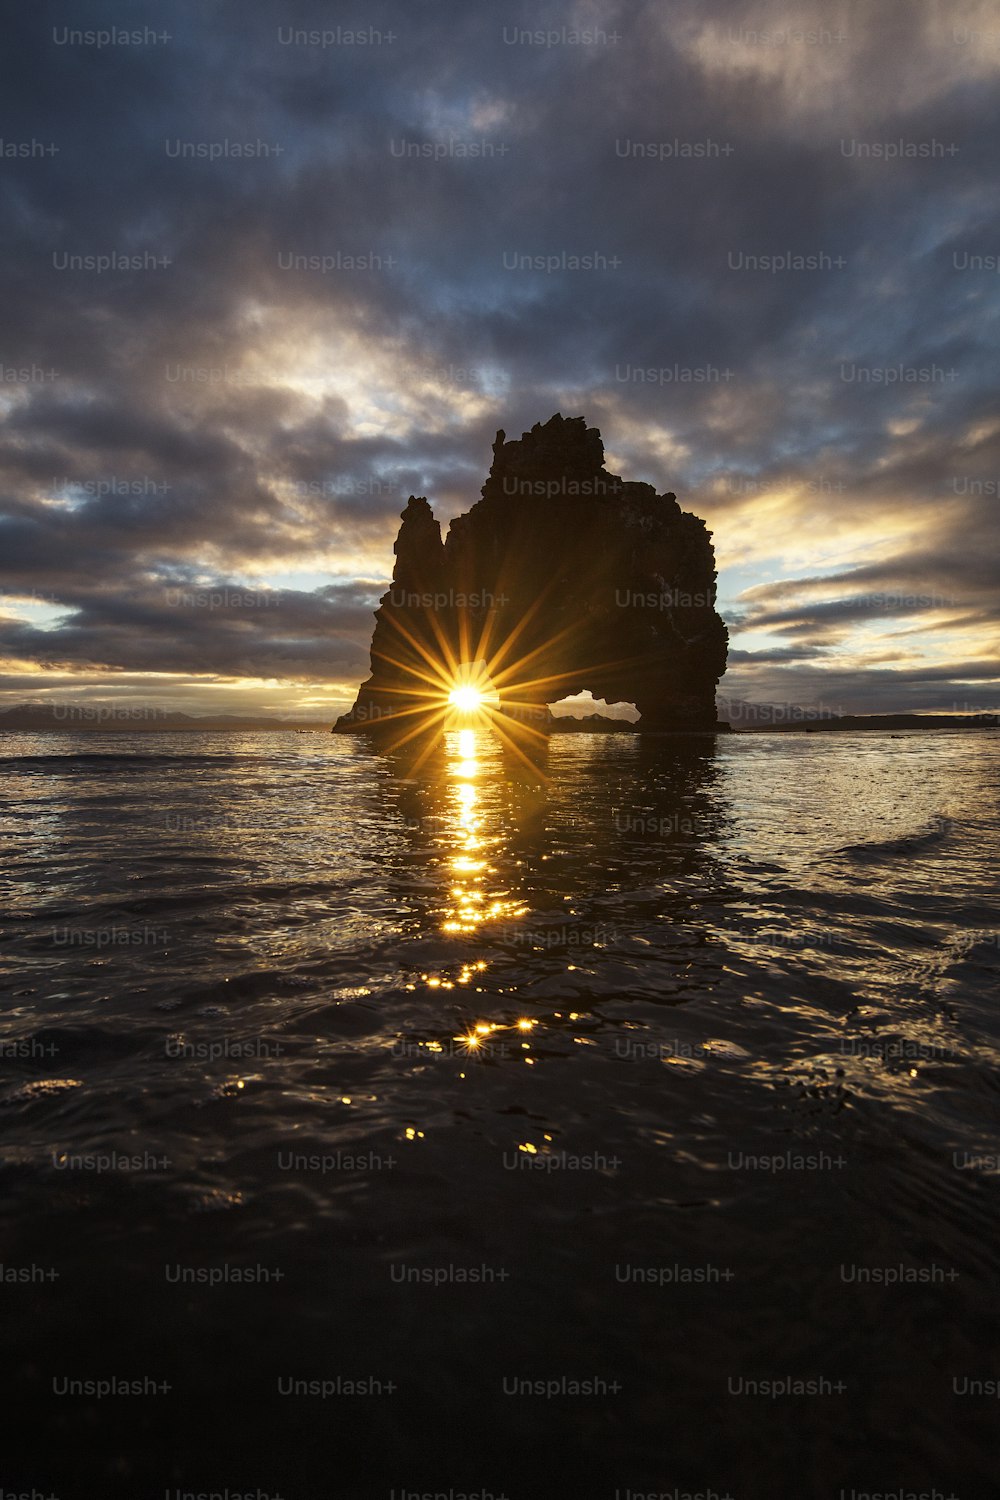 Le soleil se couche derrière un rocher dans l’océan